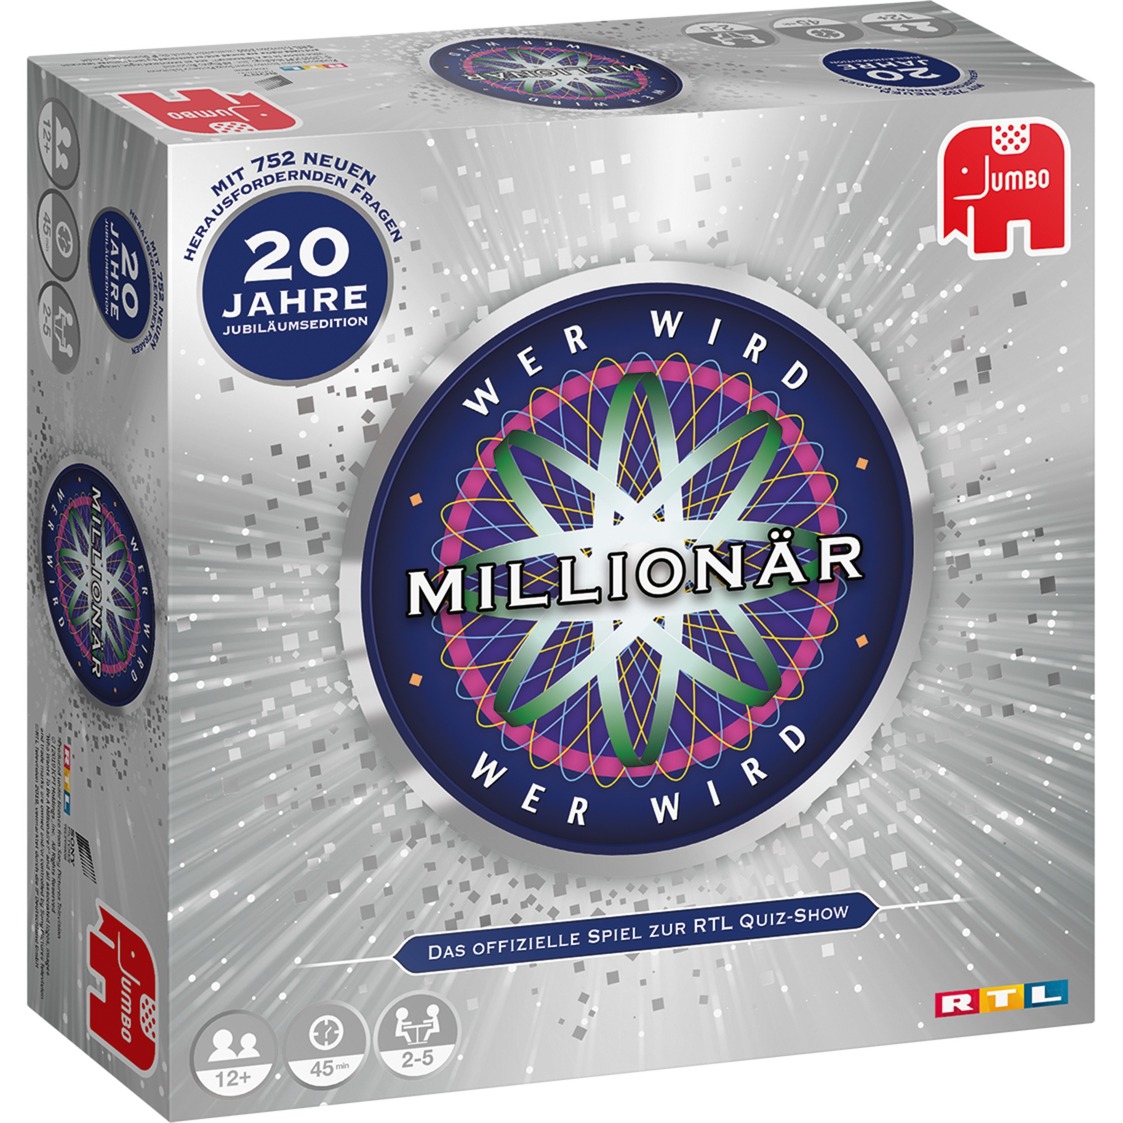 Image of Alternate - Wer wird Millionär 20 Jahre Jubiläumsedition, Brettspiel online einkaufen bei Alternate